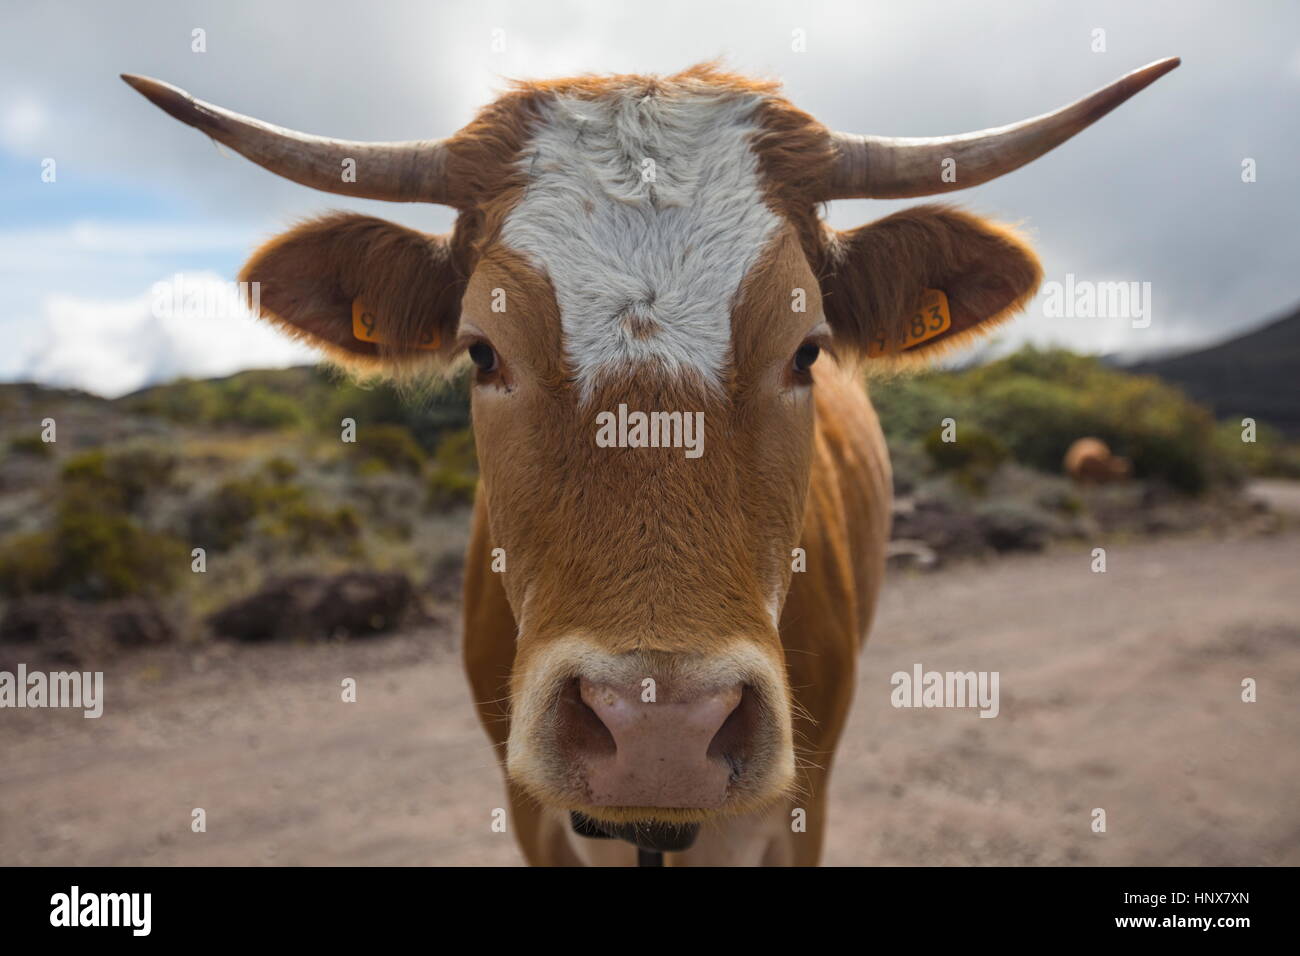 Portrait de vache sur un chemin de terre, de l'île de la réunion Banque D'Images